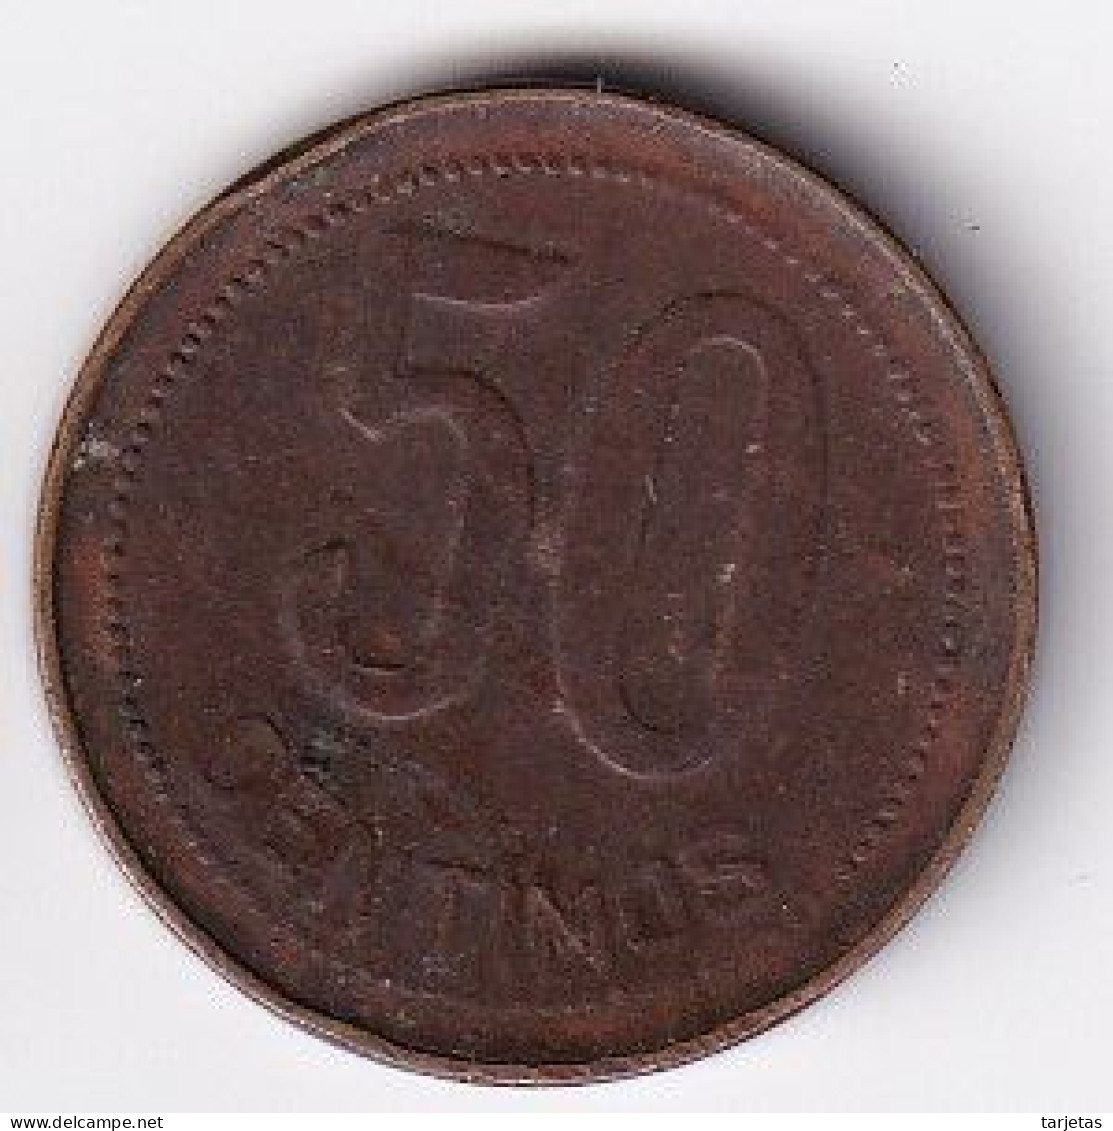 MONEDA DE ESPAÑA DE 50 CENTIMOS DEL AÑO 1937 (COIN) REPUBLICA ESPAÑOLA - 50 Céntimos